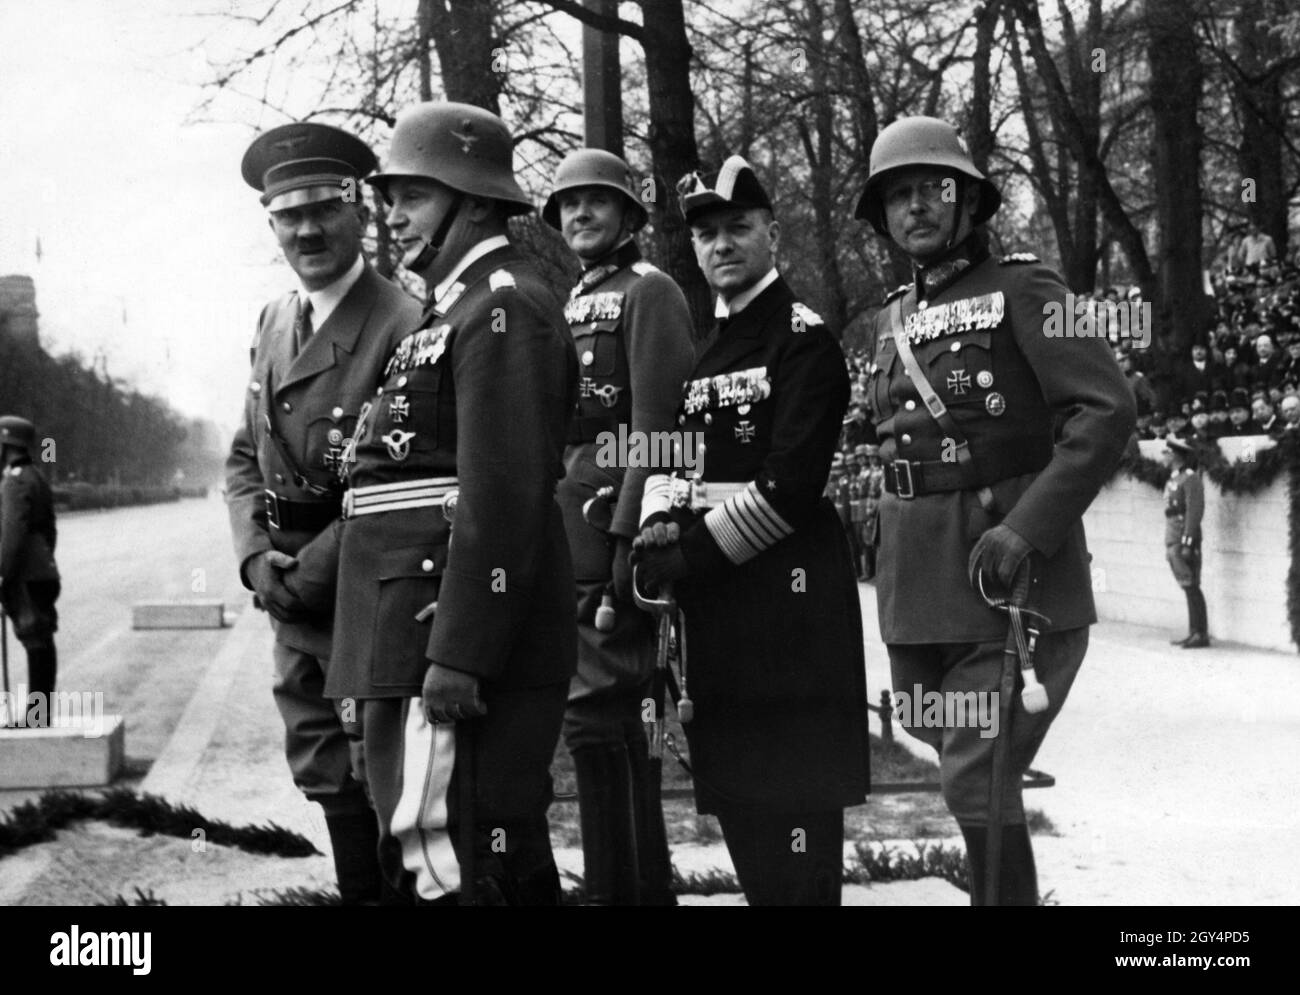 Hitler avec Hermann Göring, Werner von Blomberg, Erich Raeder et Werner von Fritsch défilent à l'occasion de l'anniversaire d'Hitler.Werner von Blomberg en tant que ministre de la guerre et Göring, Raeder et Fritsch en tant que chefs de l'armée de l'air, de la marine et de l'armée.Il manque un représentant de la SS, car à ce moment-là, elle n'était pas encore considérée comme égale à la Wehrmacht et n'a que lentement étendu son influence sous Himmler.[traduction automatique] Banque D'Images